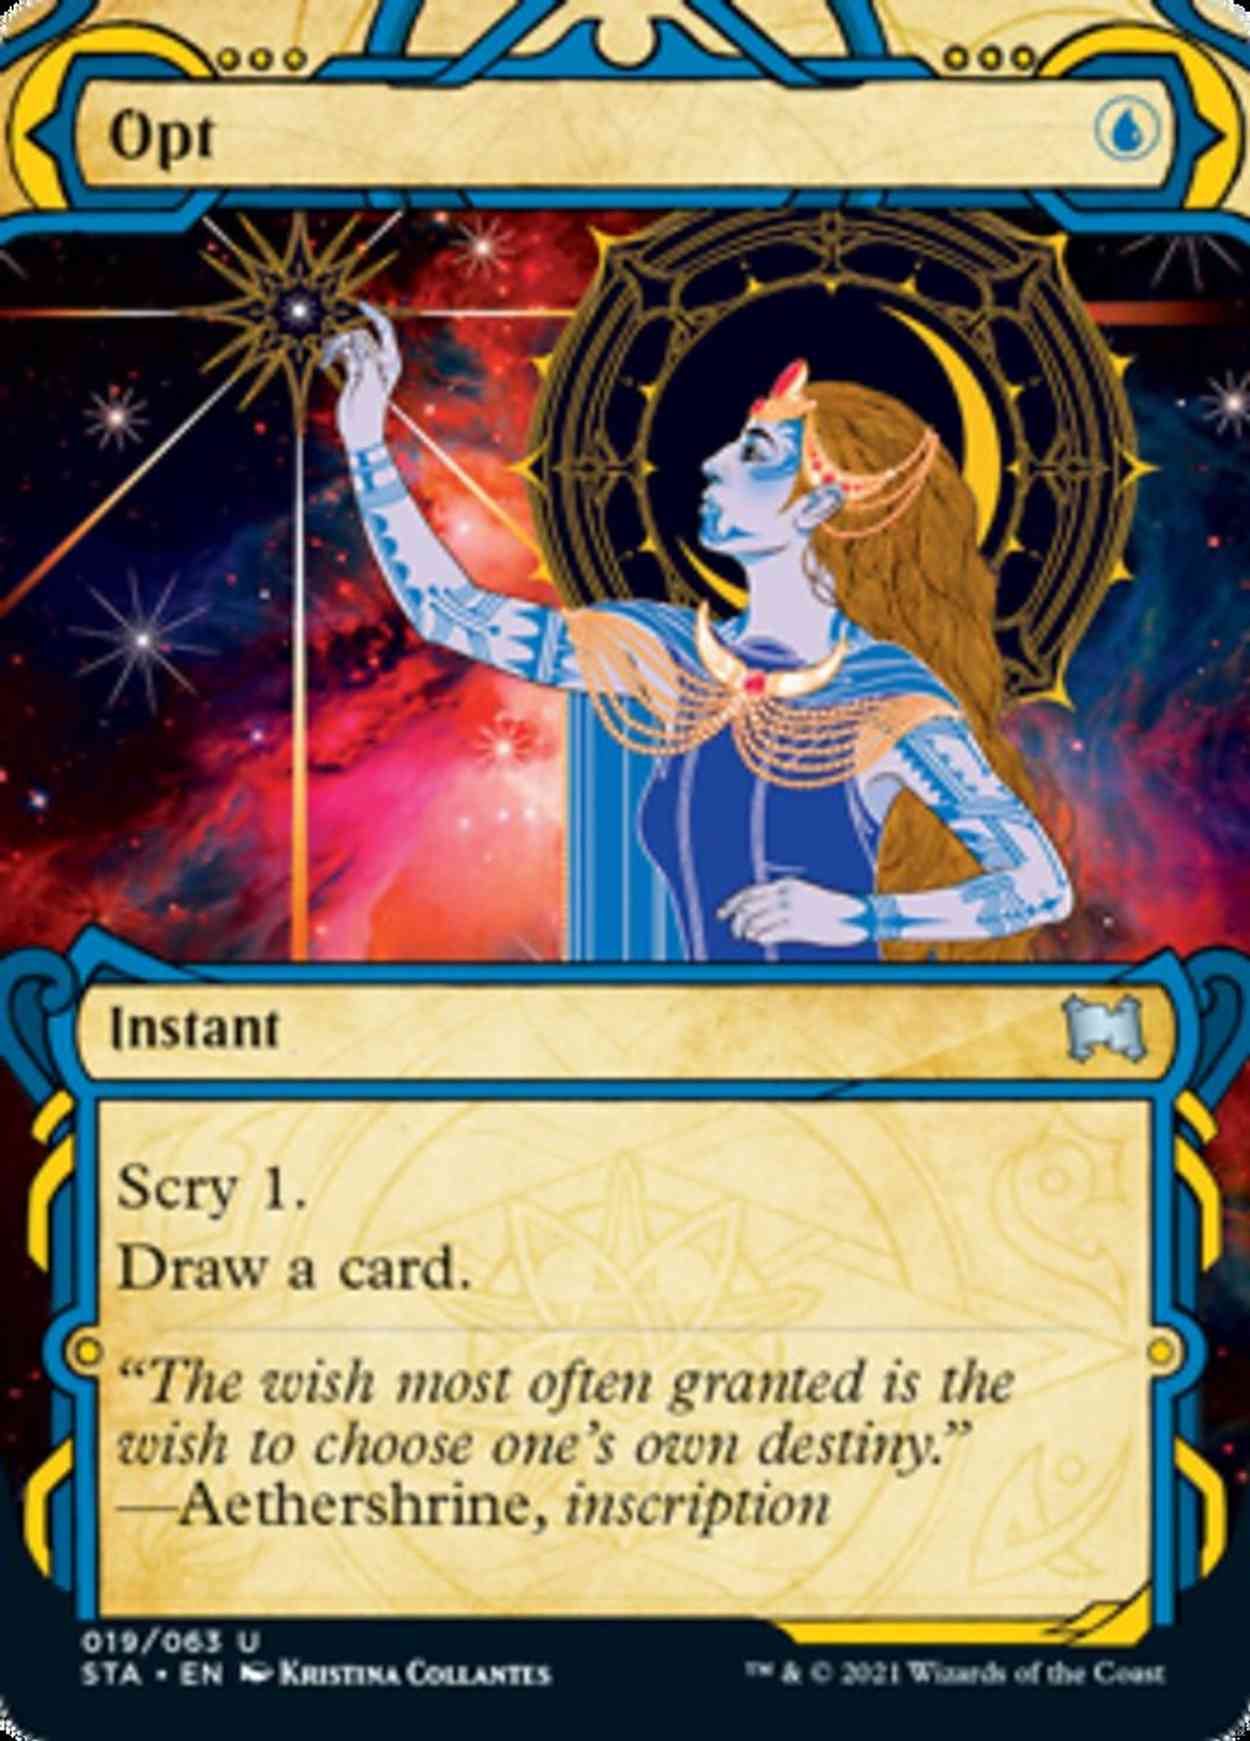 Opt magic card front